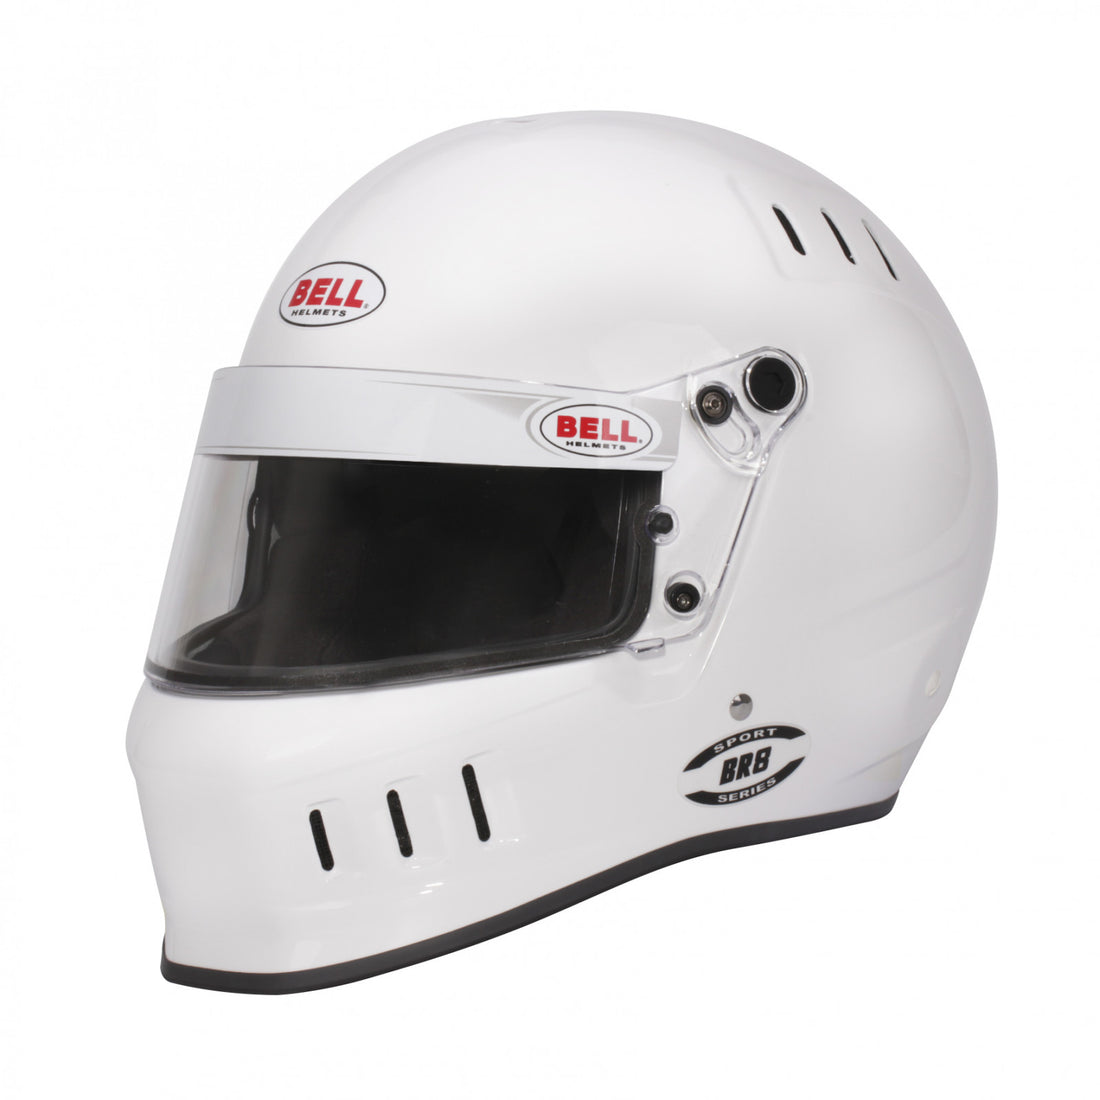 Bell BR8 White Helmet Size Medium